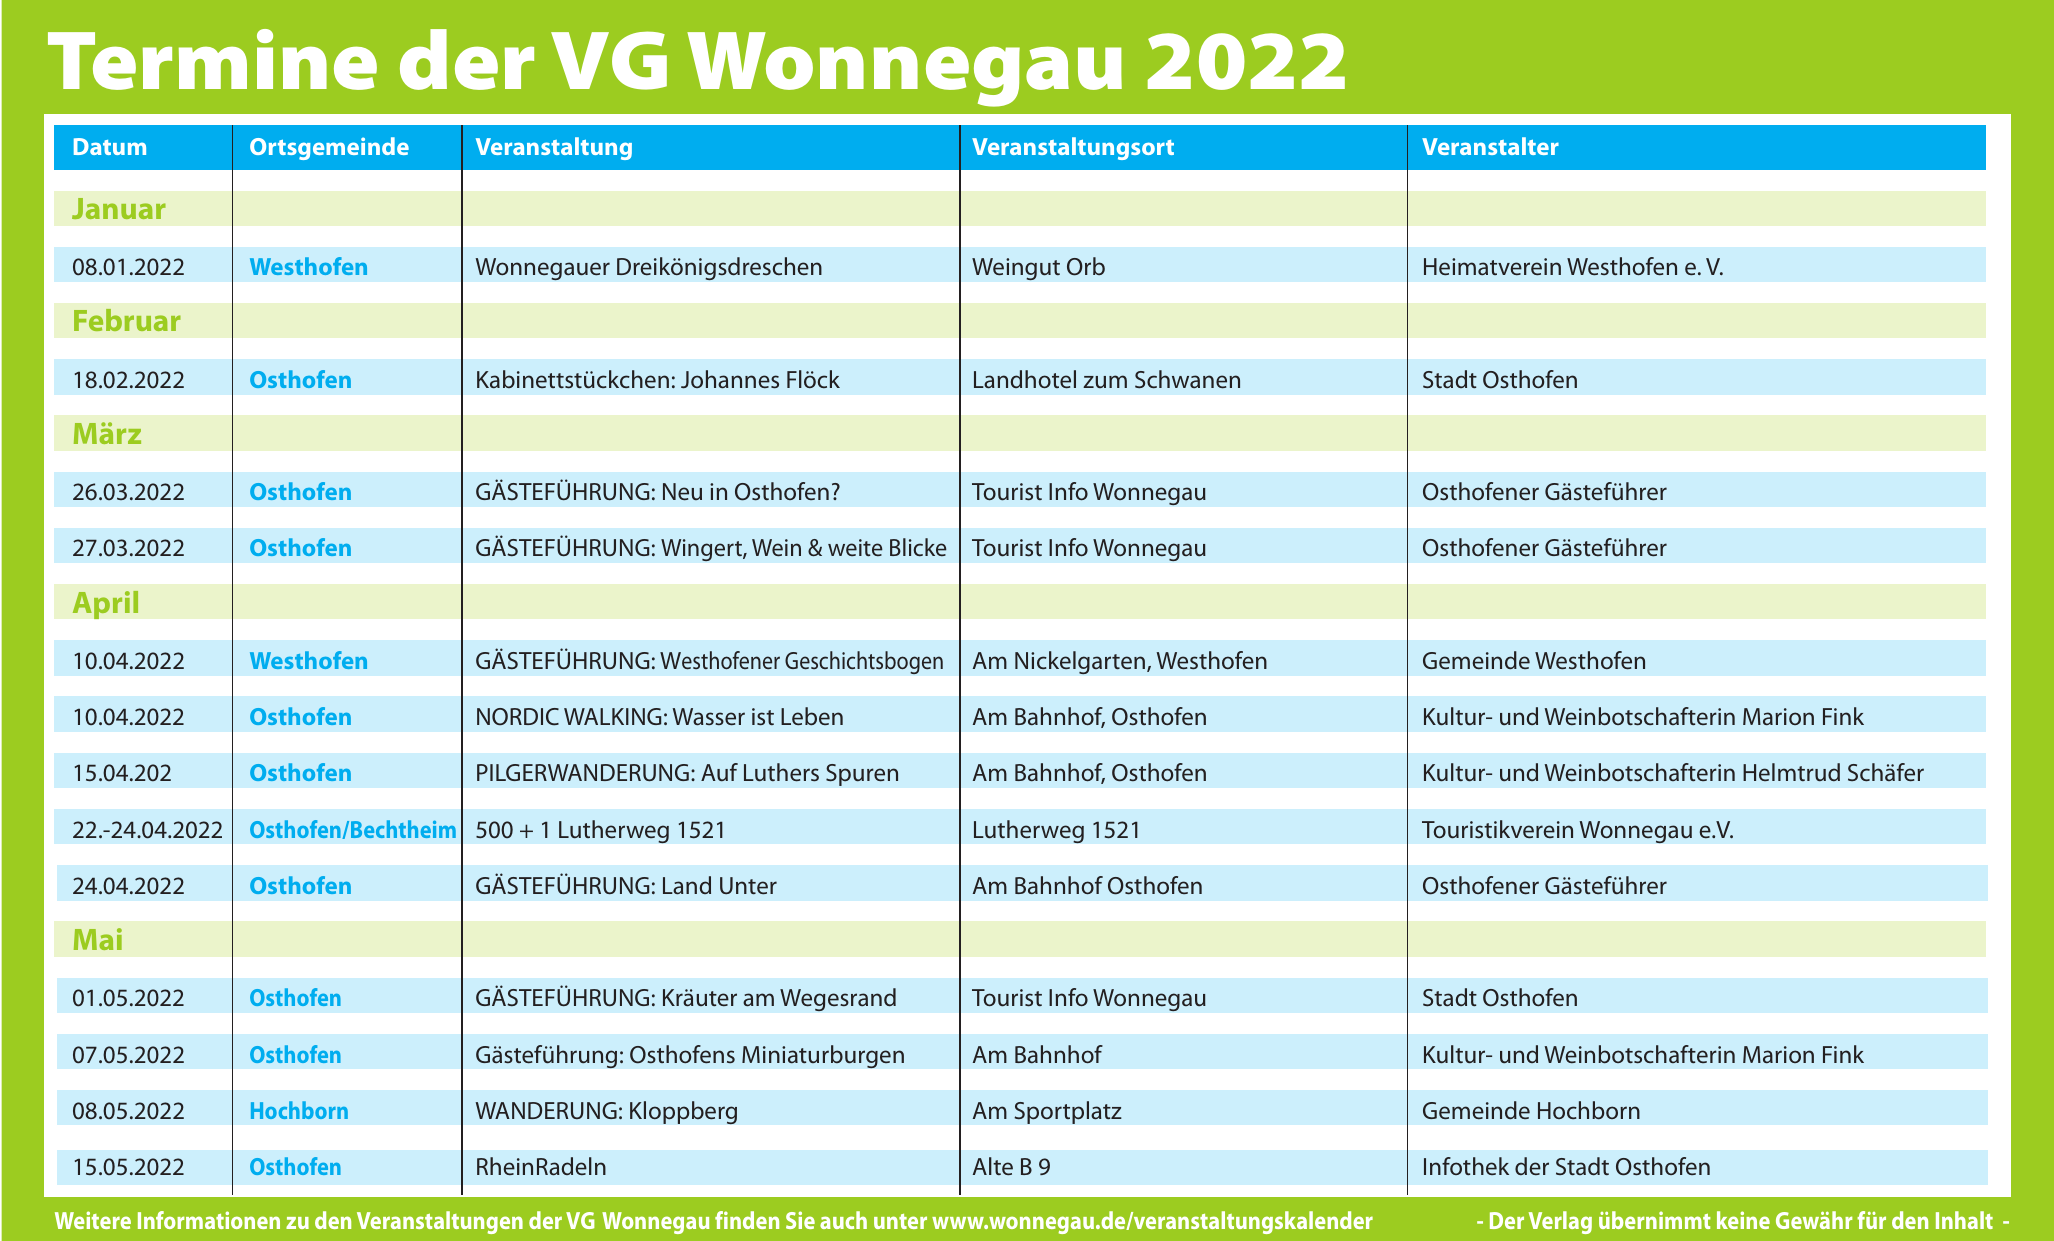 Termine der VG Wonnegau 2022 Image 3